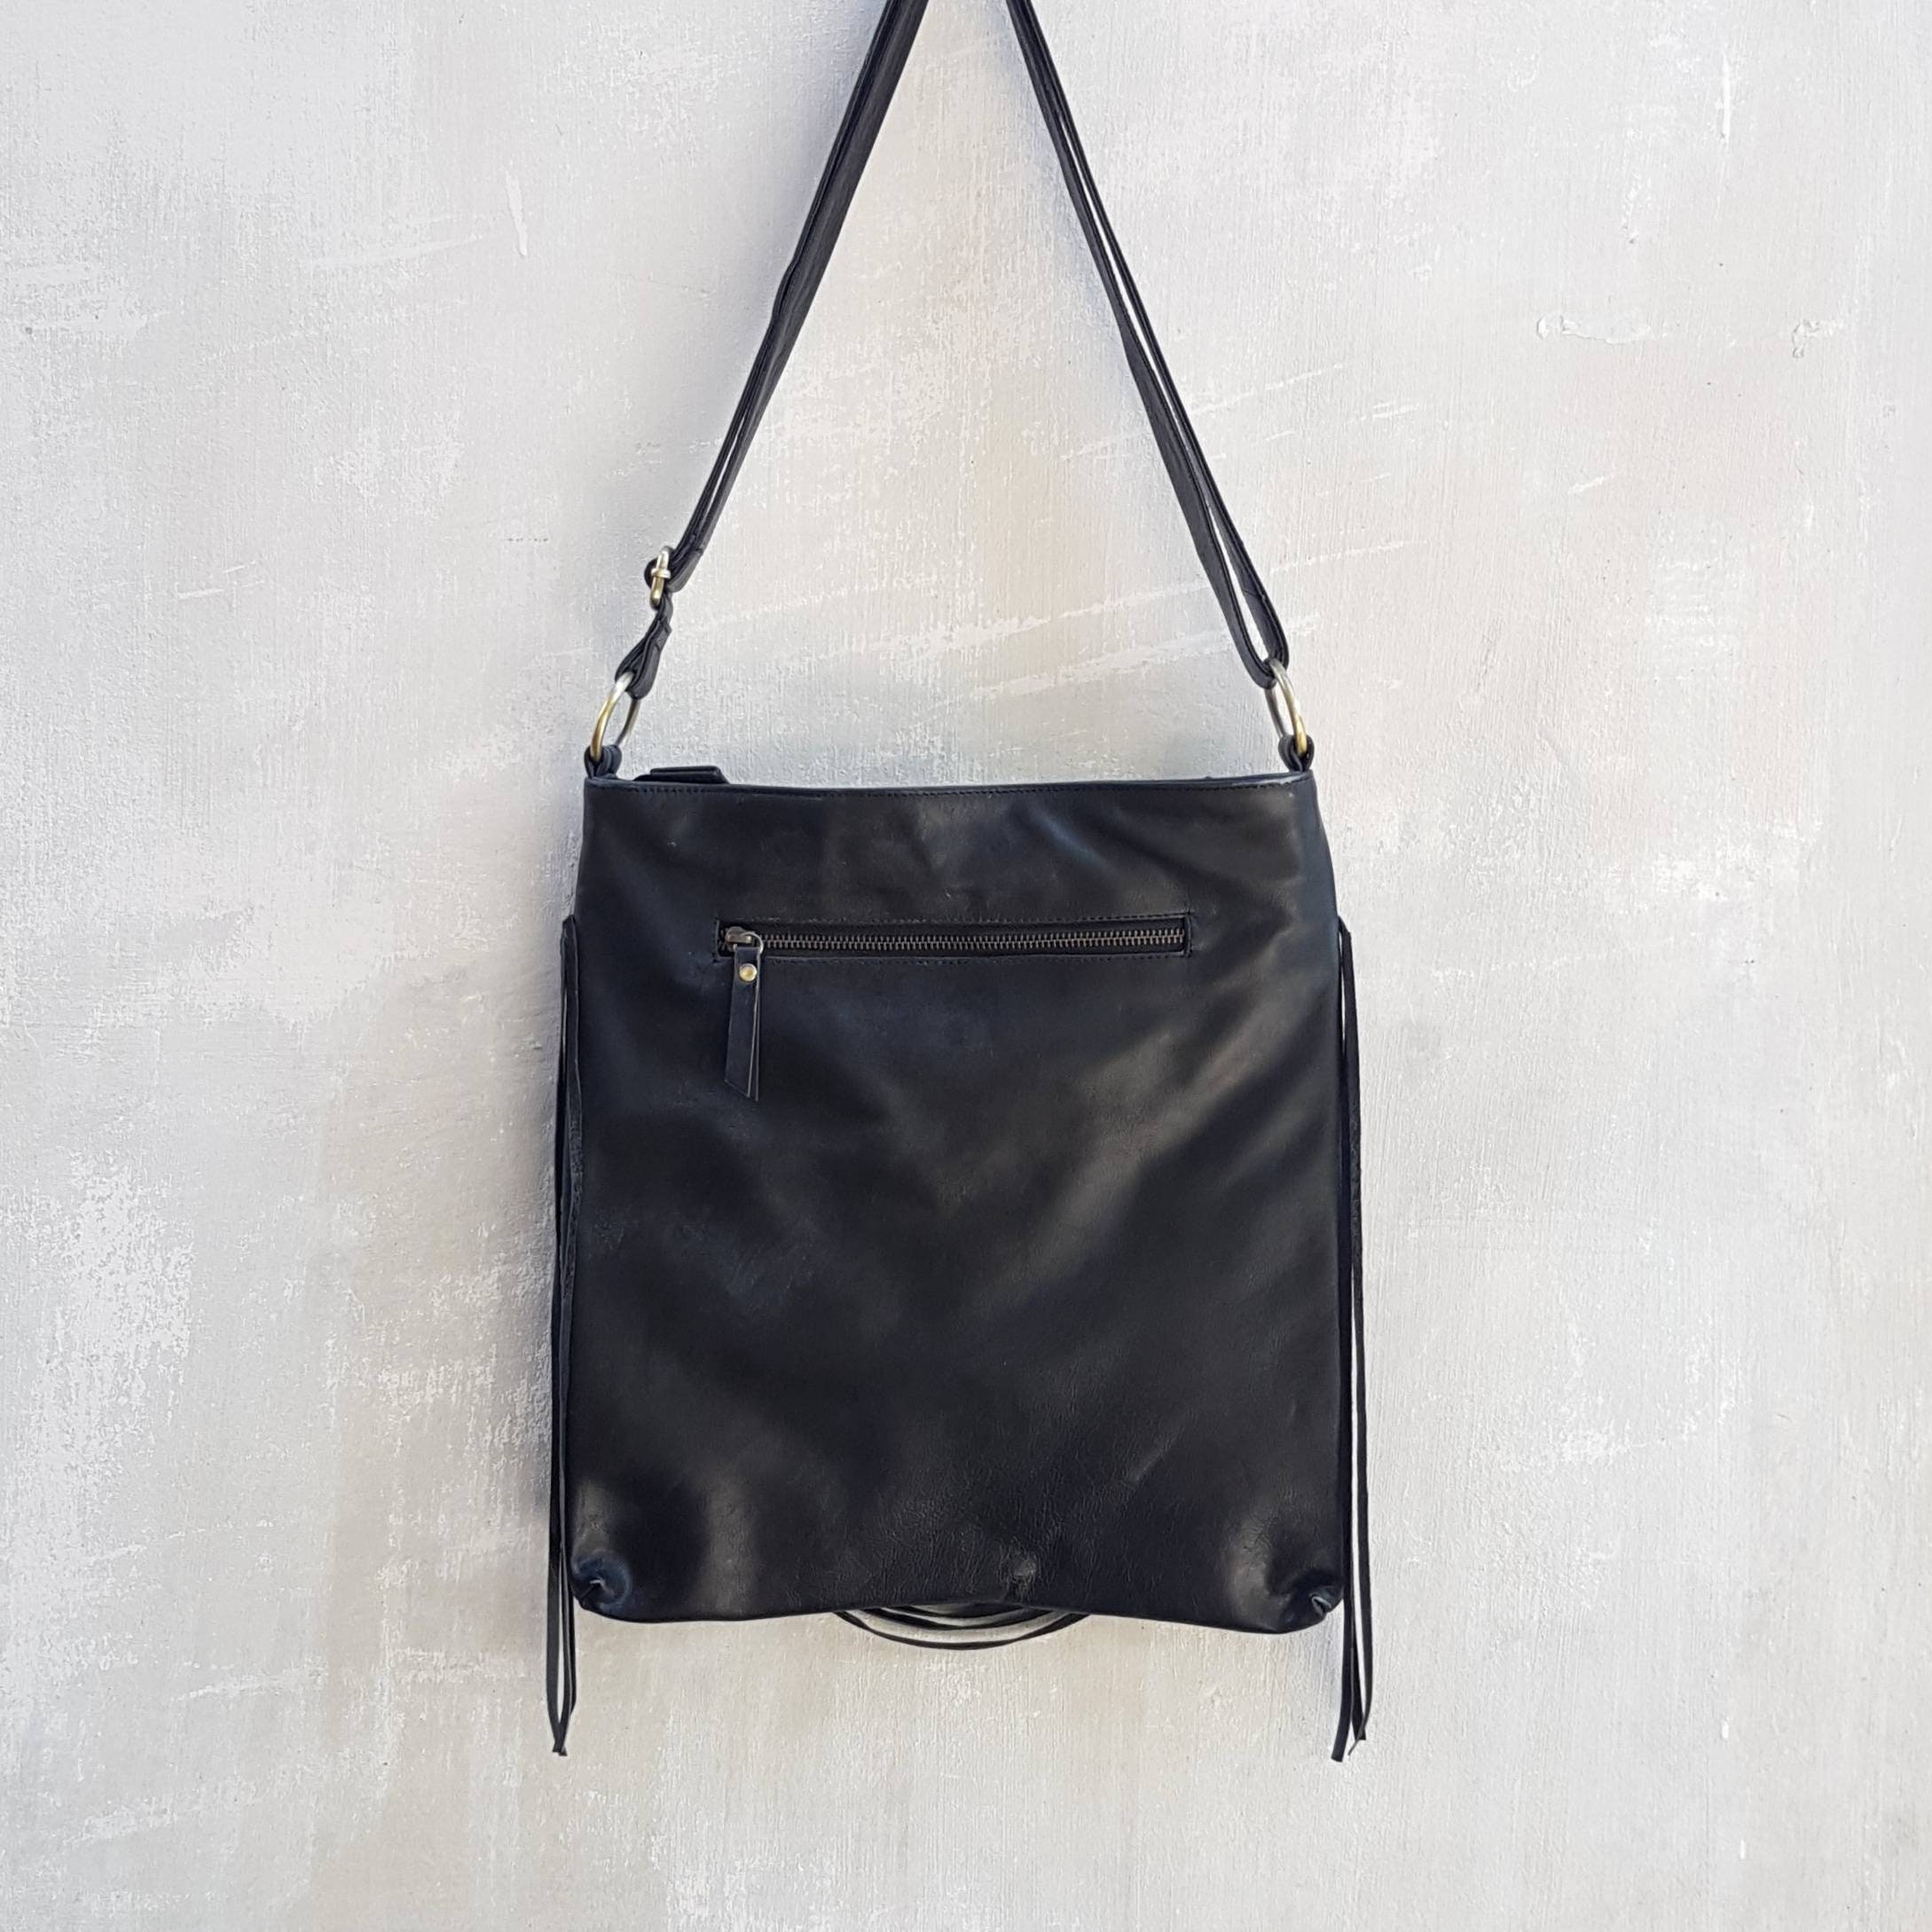 Hobo Black Leather Crossbody Bags for Women - Etsy